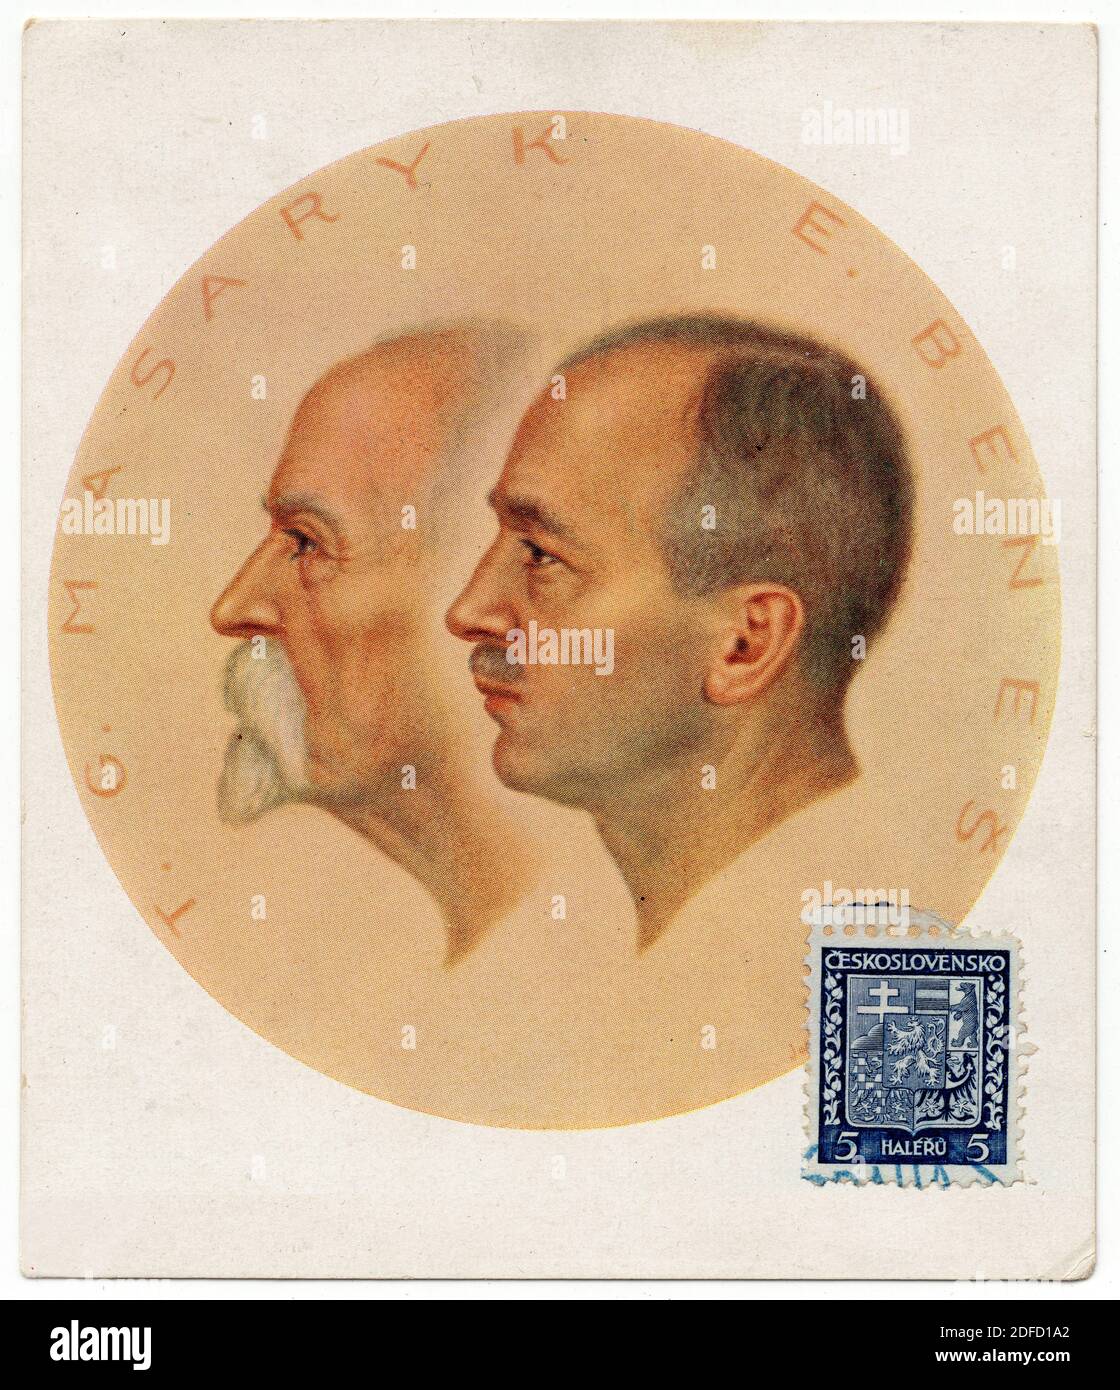 Les présidents tchécoslovaques Tomáš Garrigue Masaryk et Edvard Beneš sont représentés de gauche à droite dans le double portrait de l'artiste tchèque Jóža Bělohorský (1938) publié dans la carte postale tchécoslovaque d'époque à l'occasion du 20e anniversaire de l'indépendance de la Tchécoslovaquie. Courtoisie de la collection de cartes postales Azoor. Banque D'Images